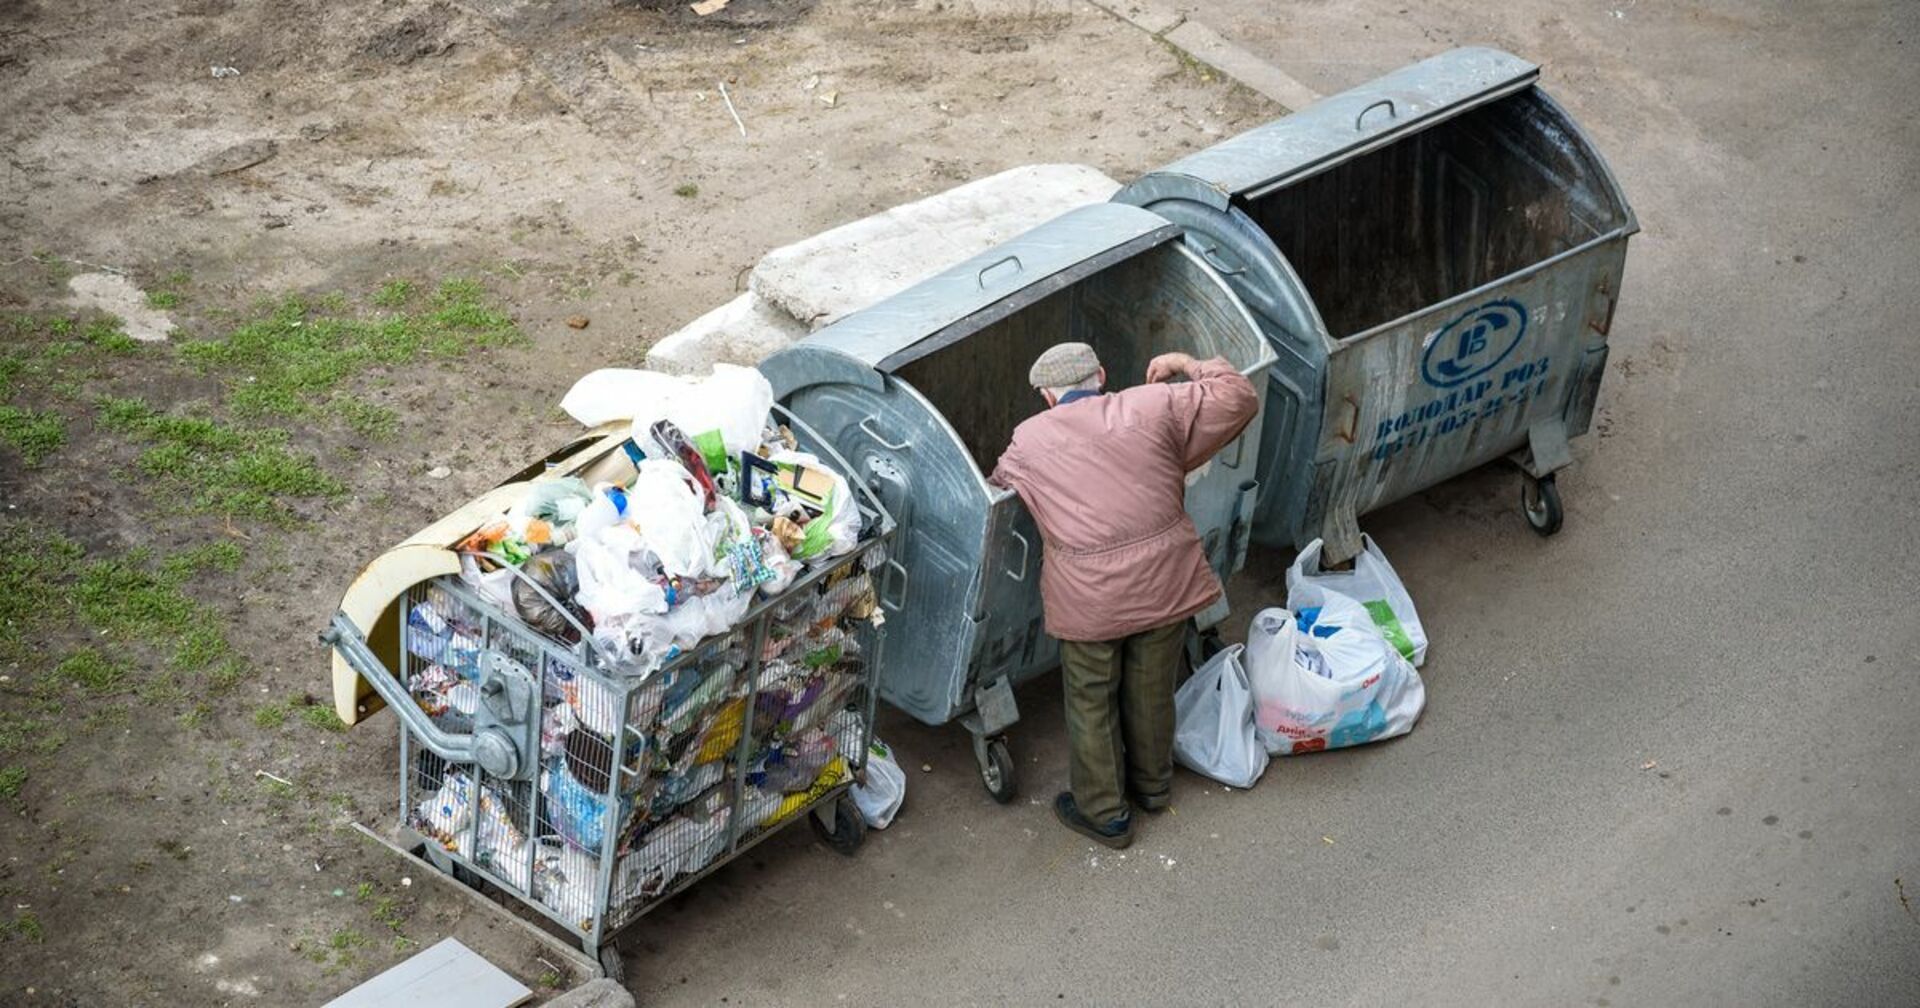 Er entdeckt eine halb offene Raviolidose im Müll: Als er hineinsieht, schreit er laut auf